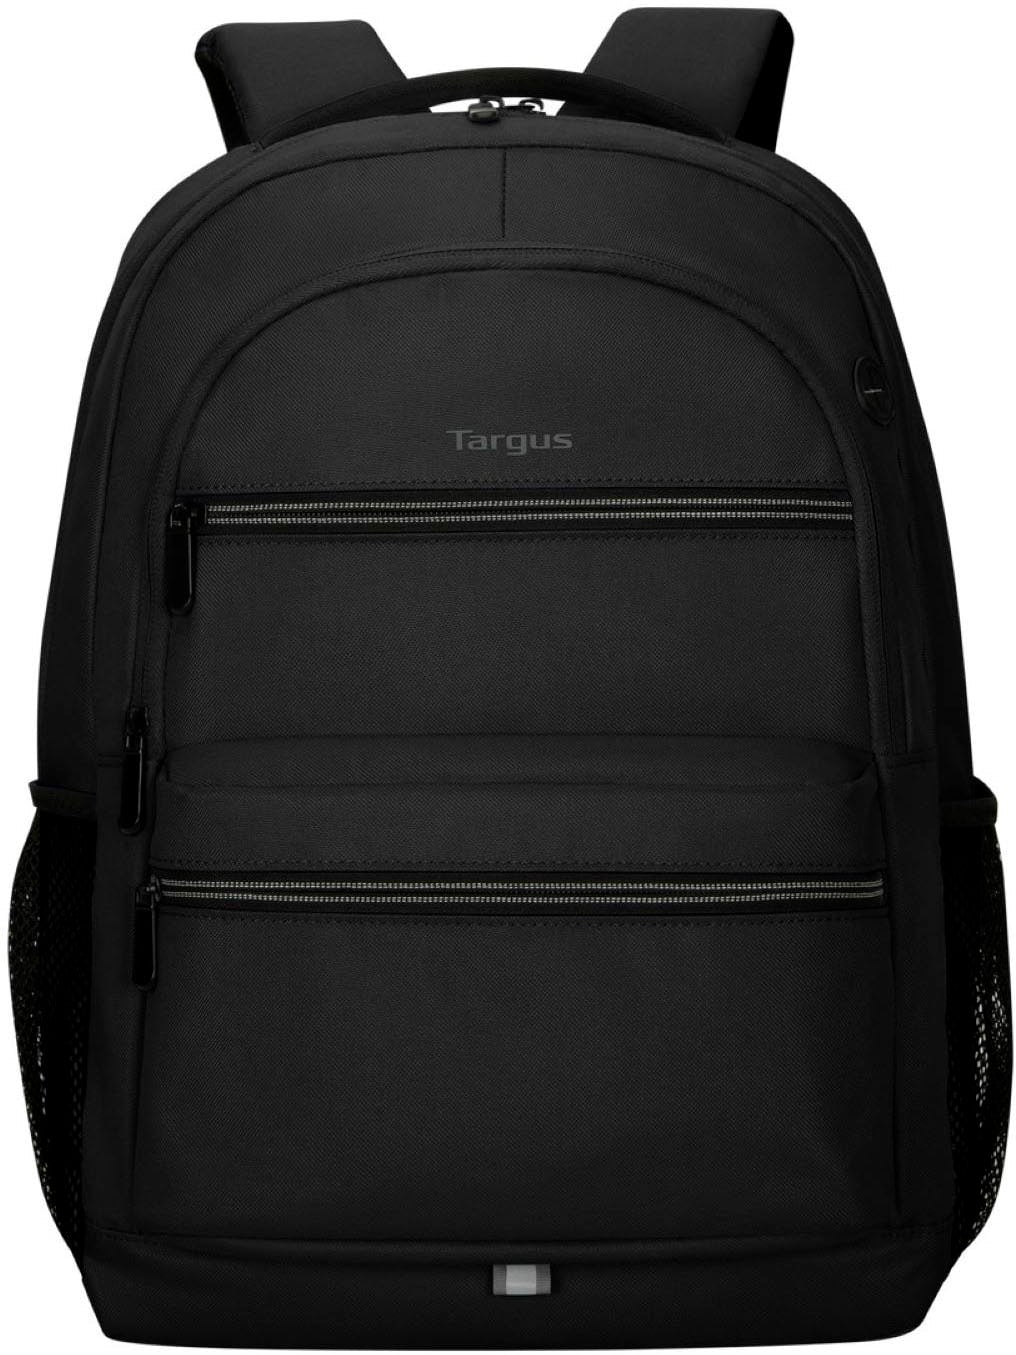 Targus - Octave II Backpack for 15.6” Laptops - Black_0